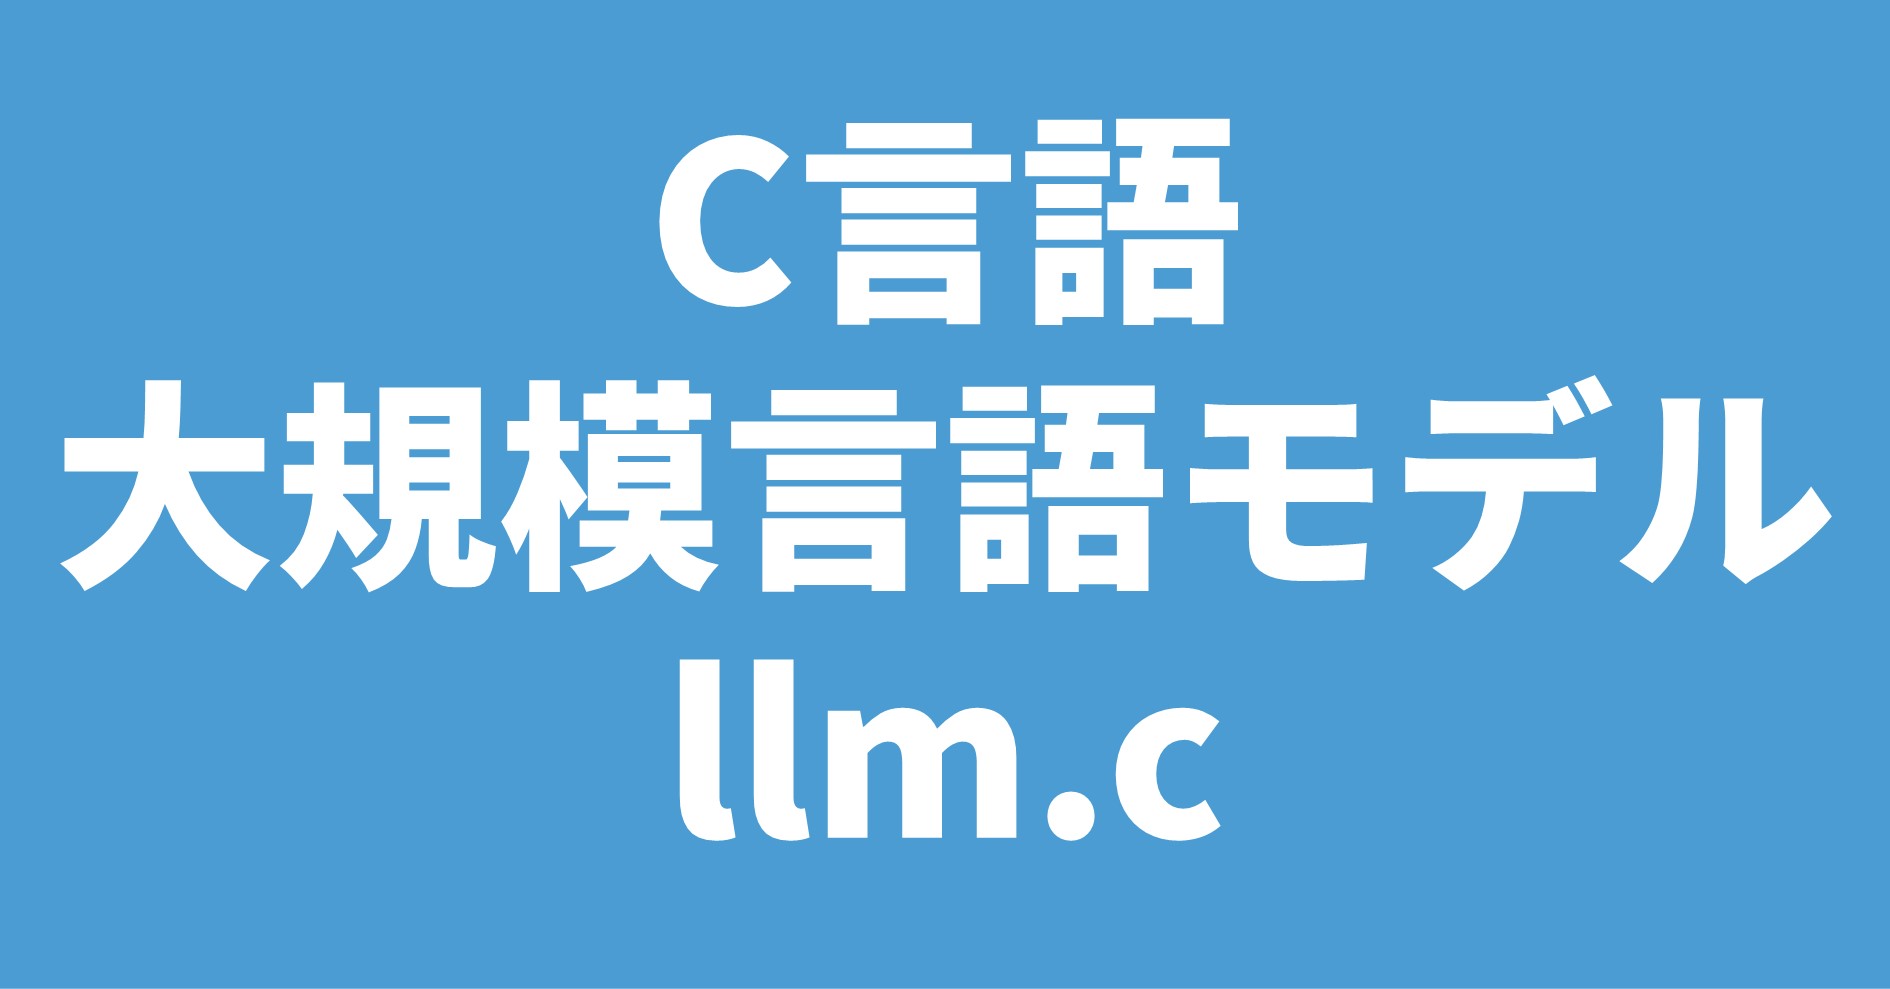 C言語 大規模言語モデル llm.c